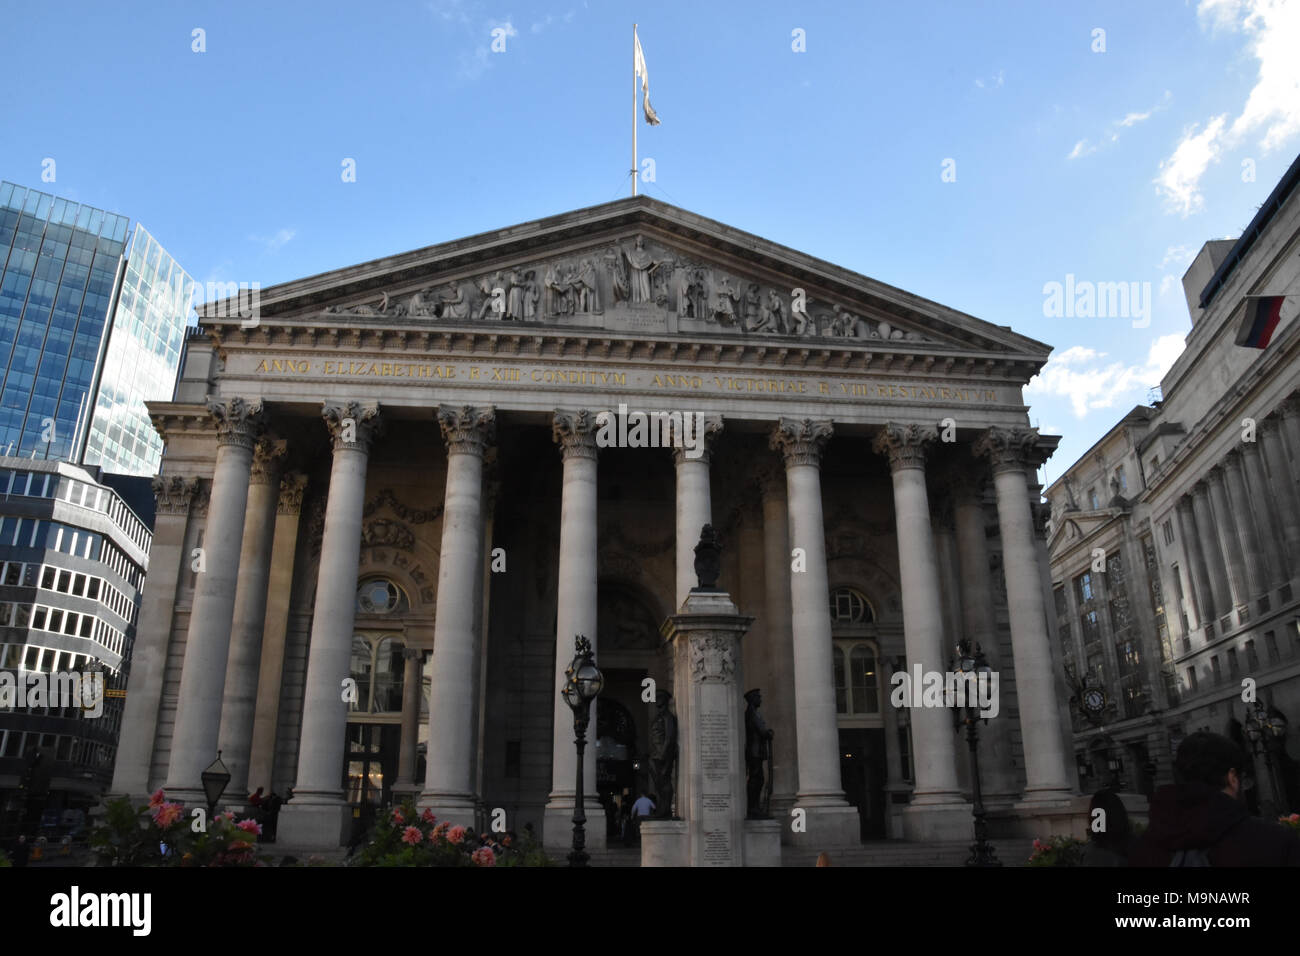 La facciata anteriore della Royal Exchange nella città di Londra. L'edificio attuale è stato inaugurato nel mese di ottobre 28th, 1844. Foto Stock